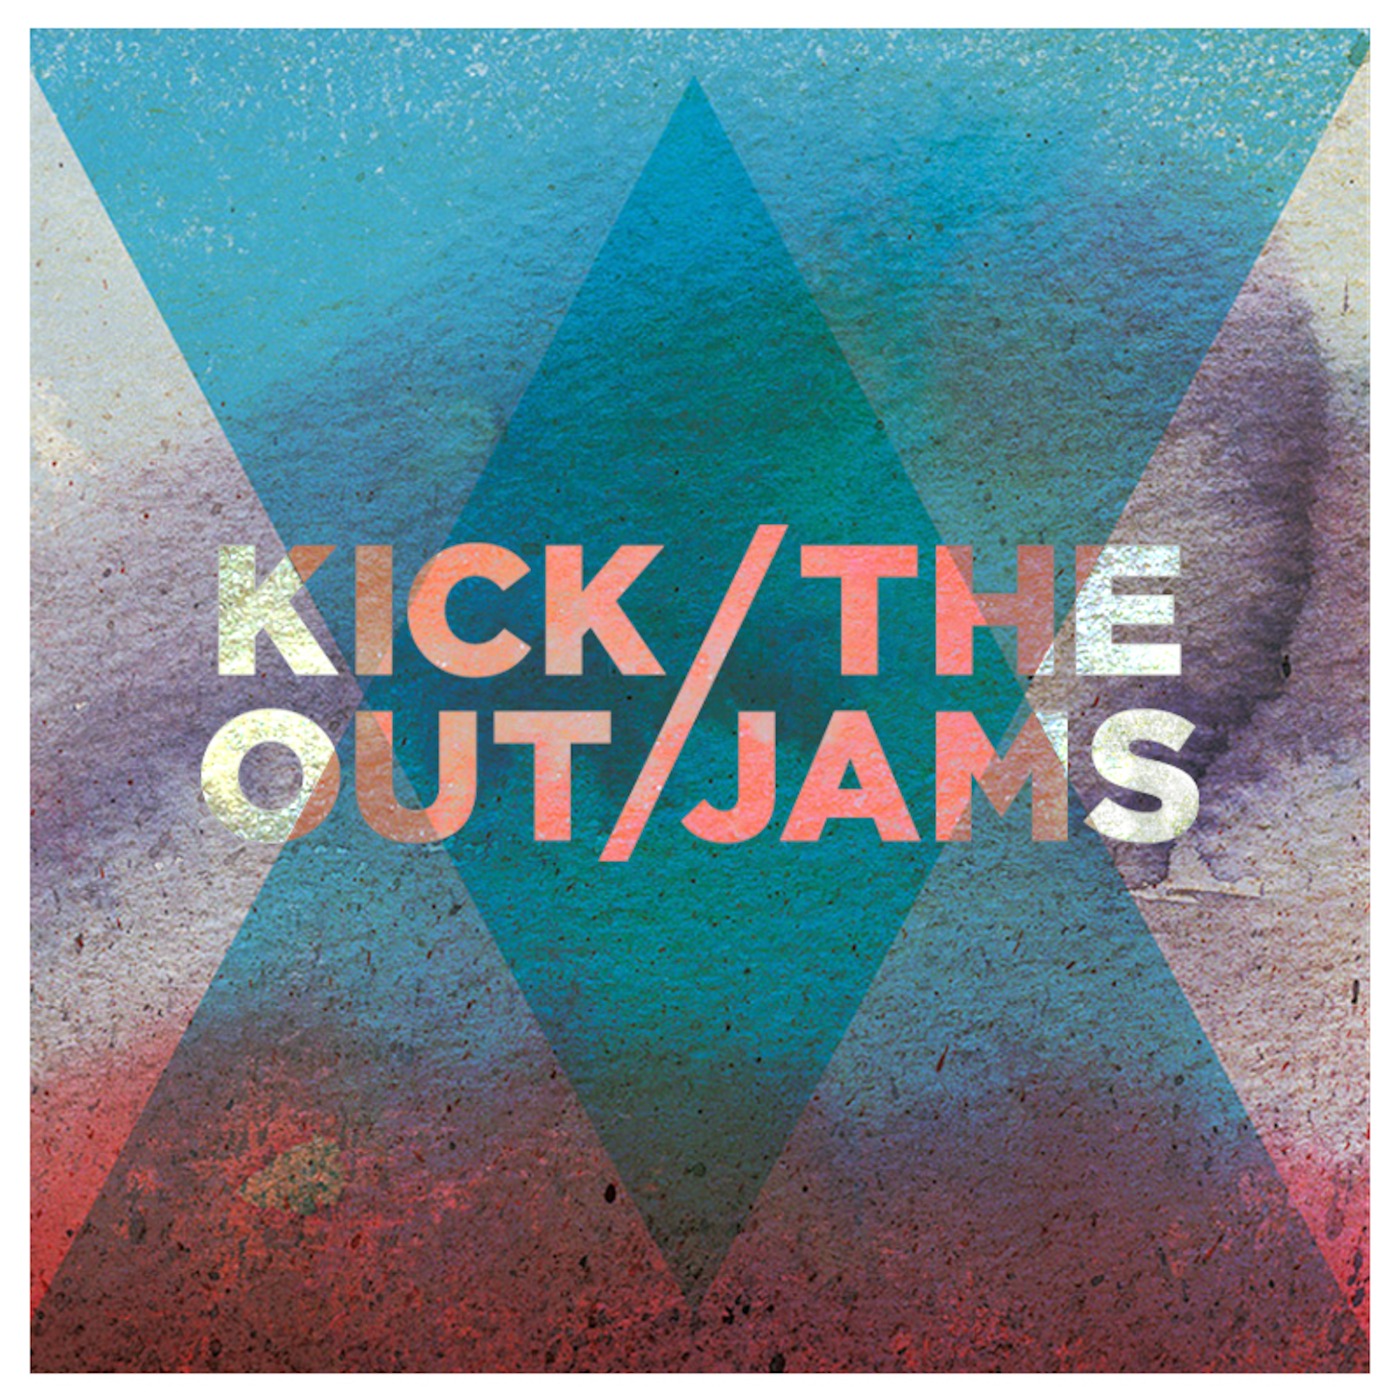 Kick Out The Jams